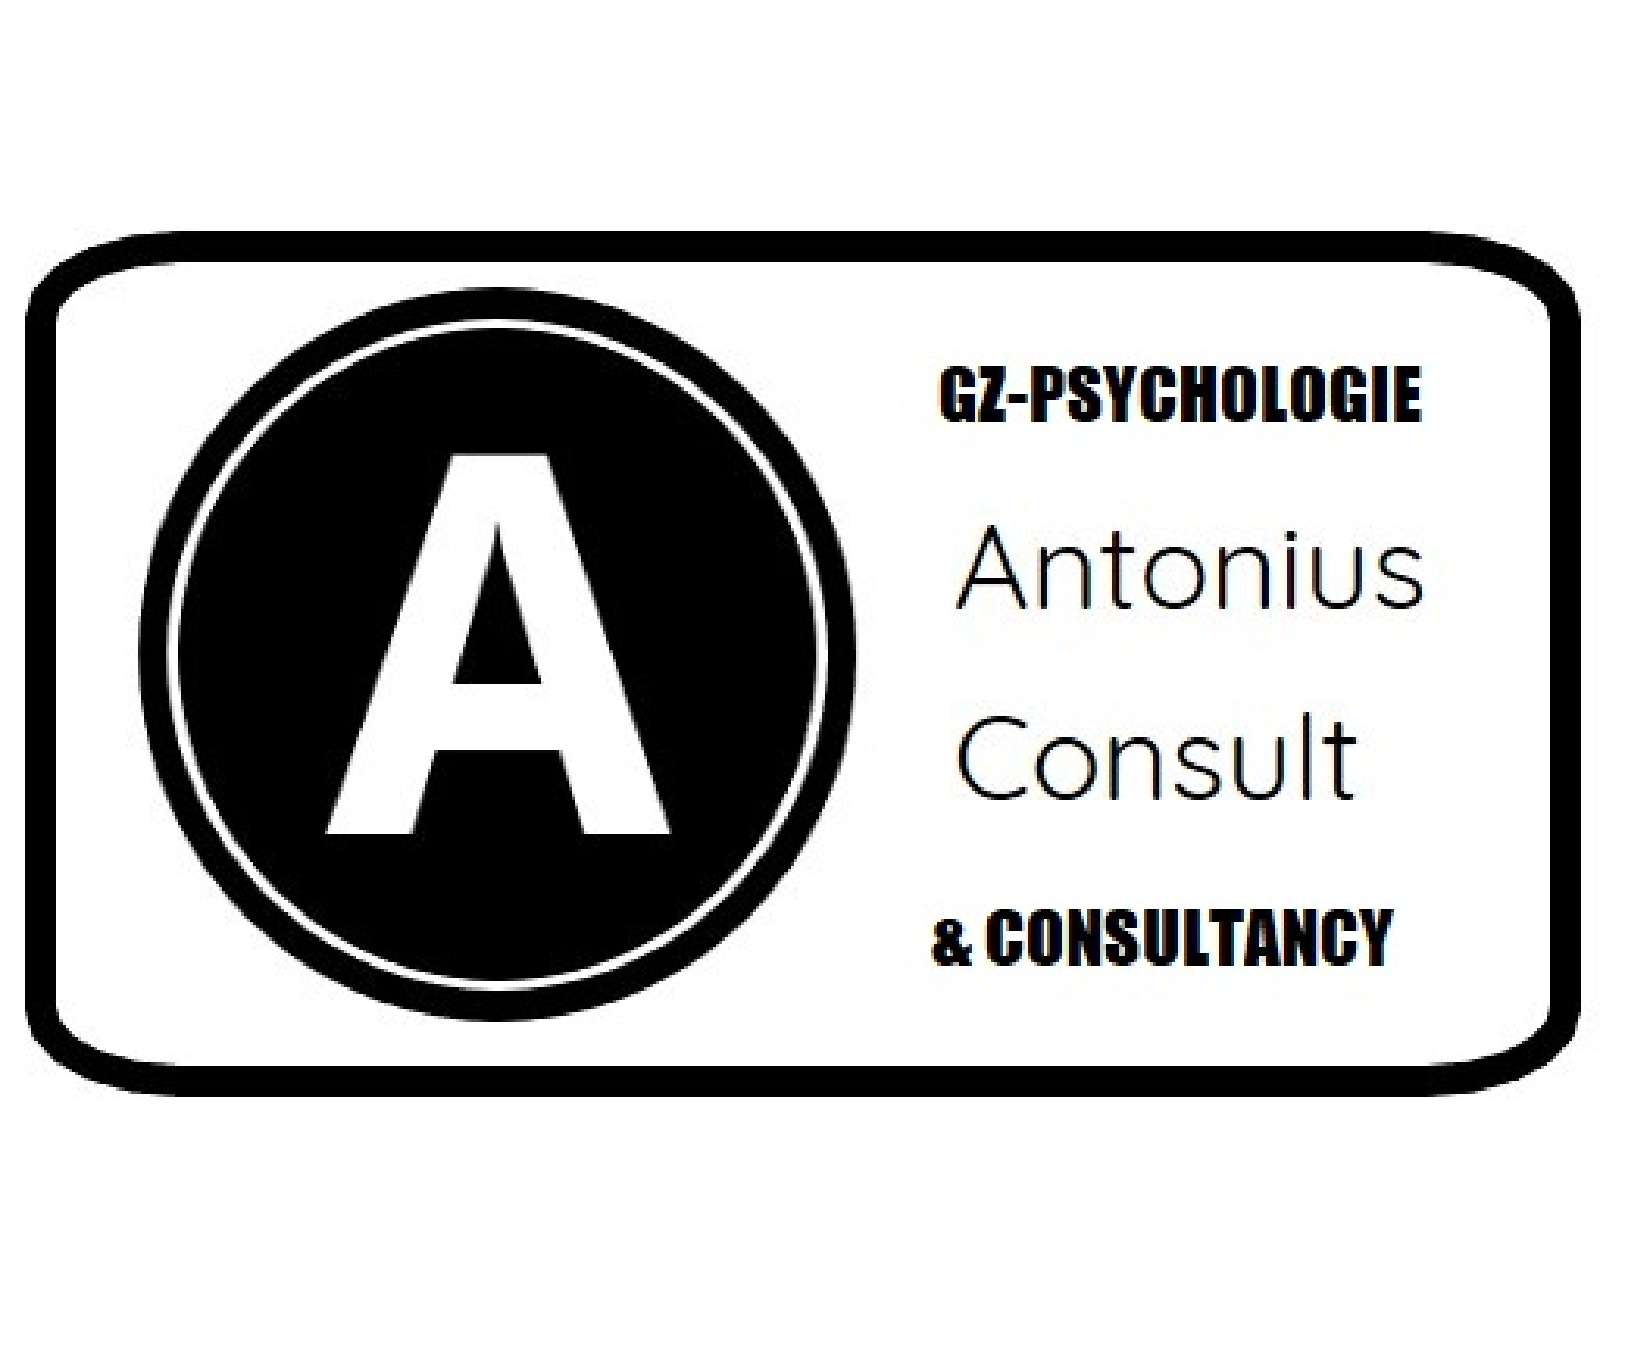 Antonius Consult